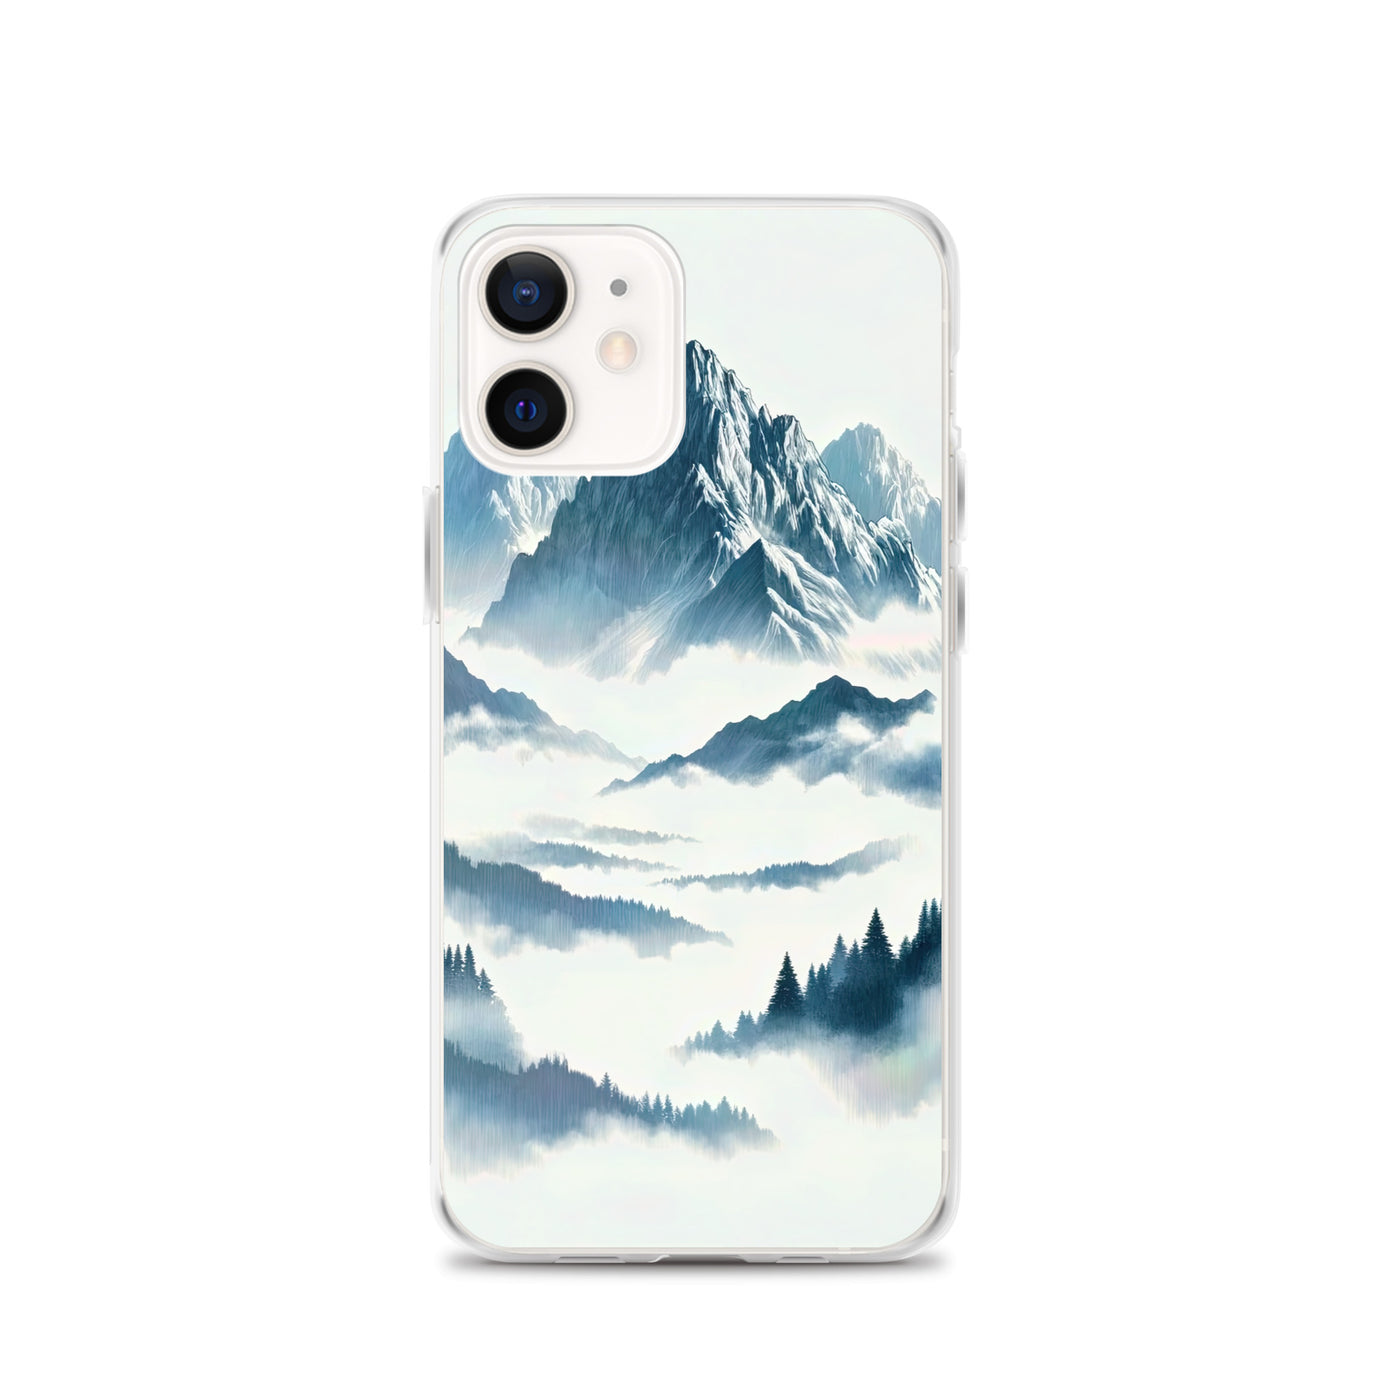 Nebeliger Alpenmorgen-Essenz, verdeckte Täler und Wälder - iPhone Schutzhülle (durchsichtig) berge xxx yyy zzz iPhone 12